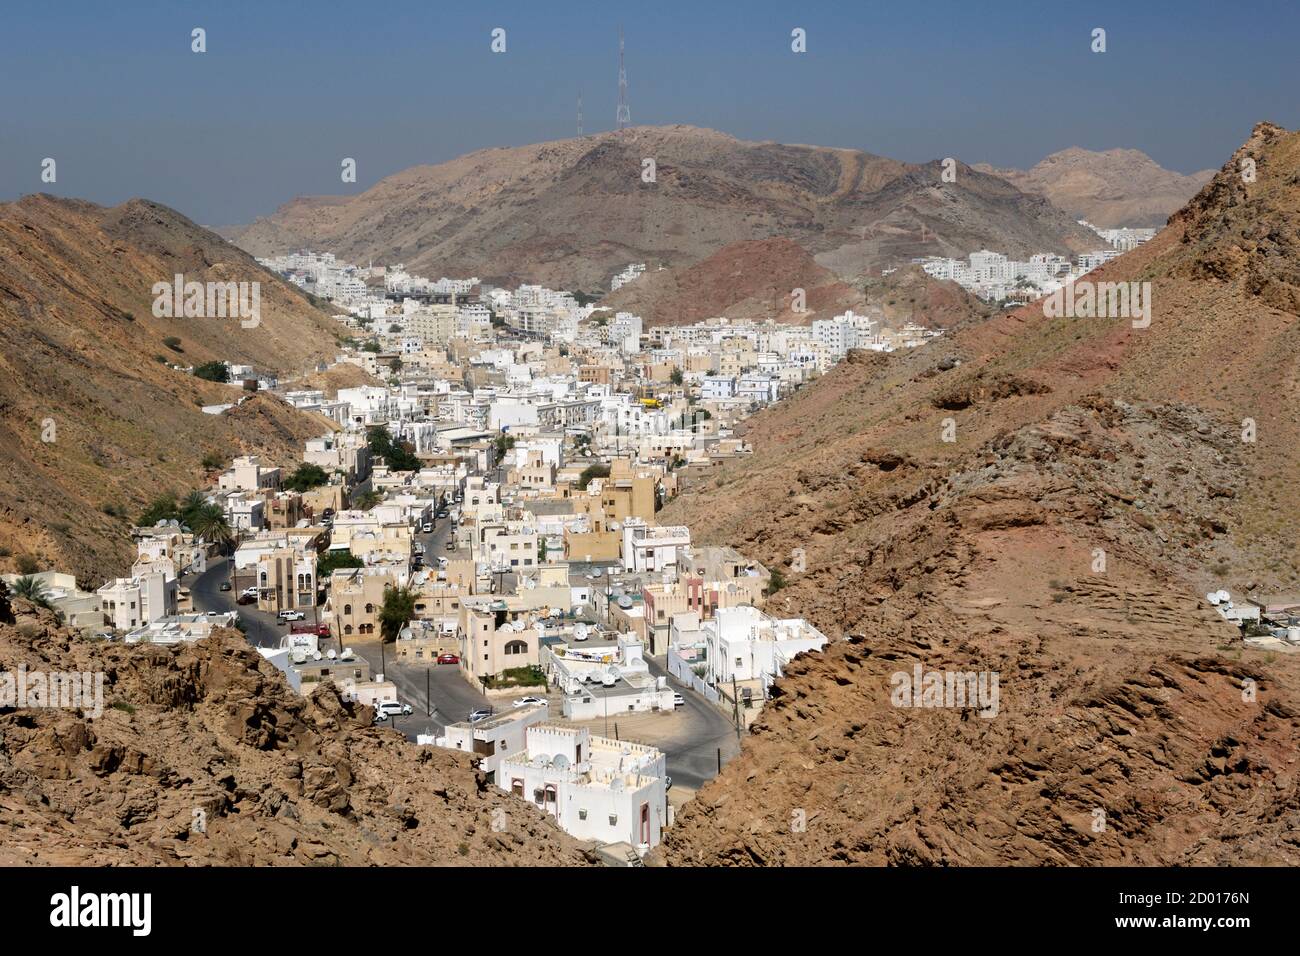 Vista di al hamria, un sobborgo di Mascate, la capitale del Sultanato dell'Oman. Foto Stock